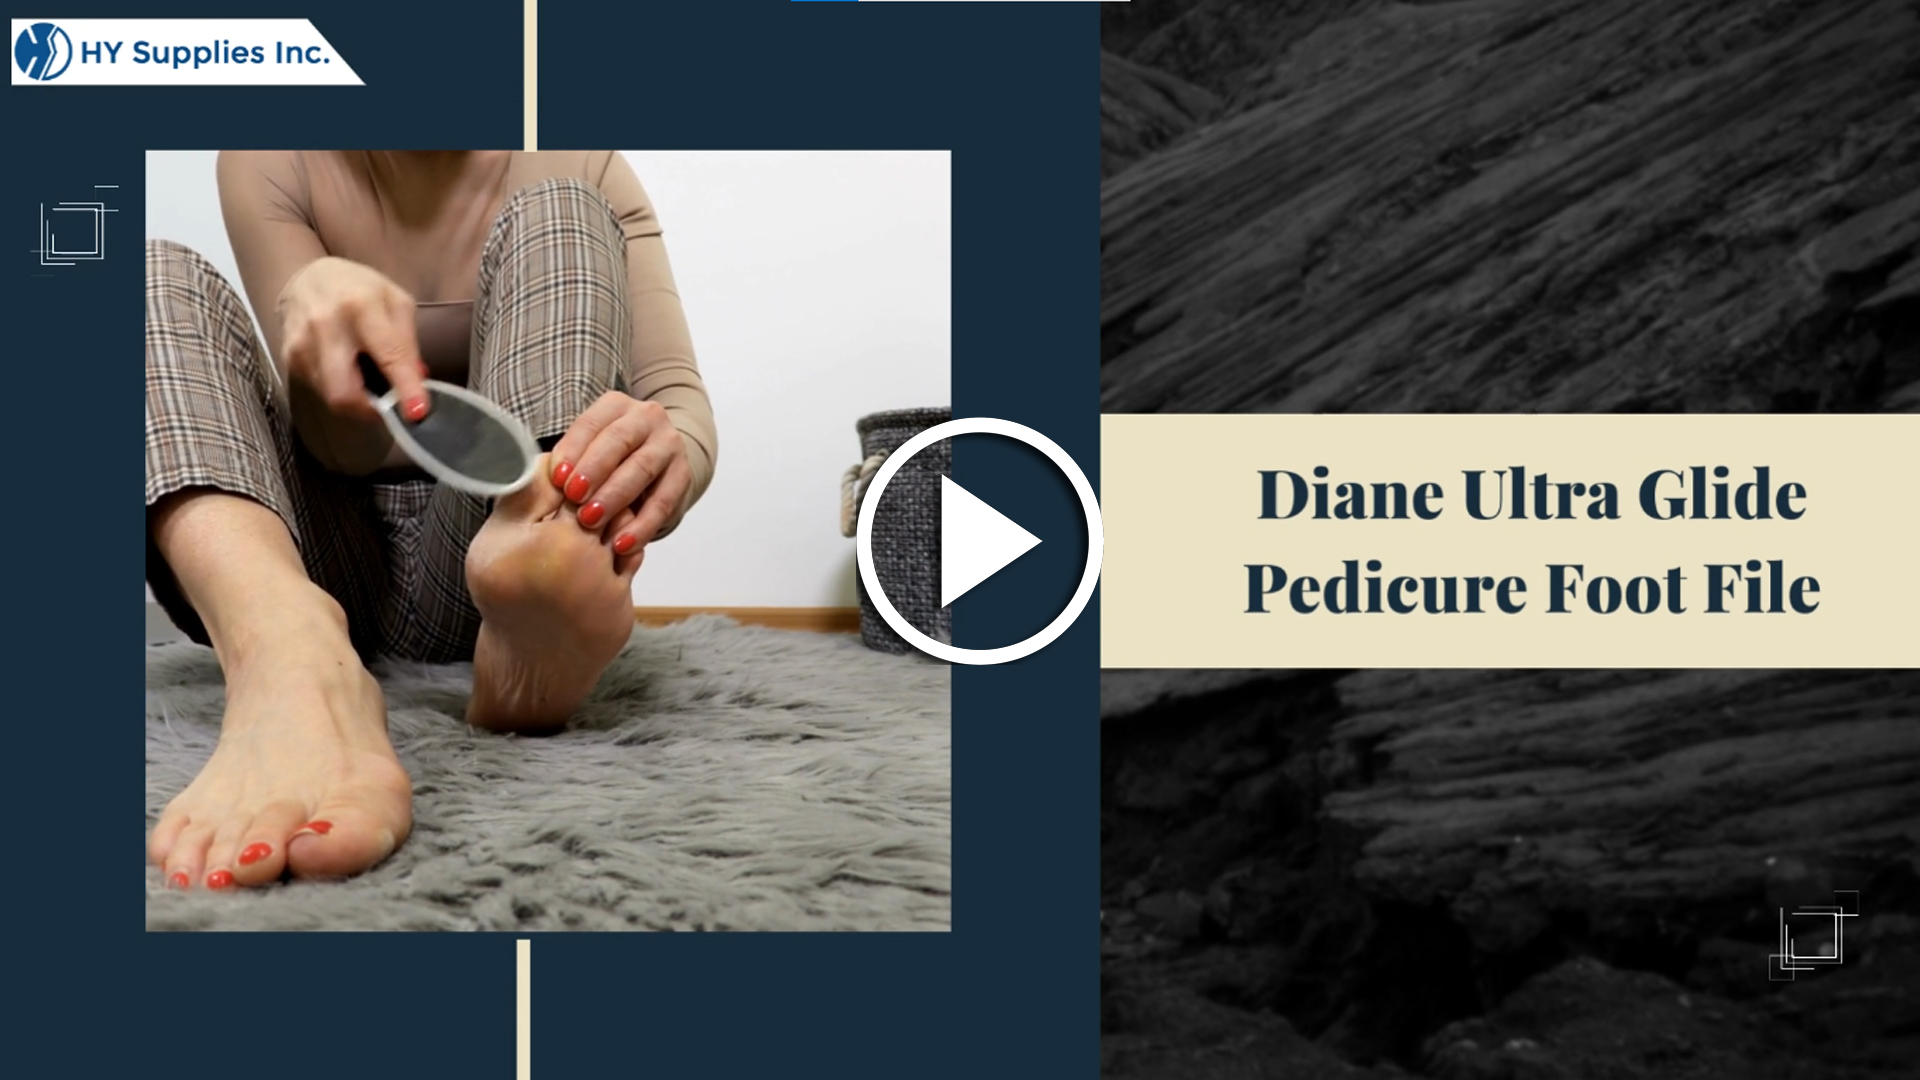 Diane Ultra Glide Pedicure Foot File